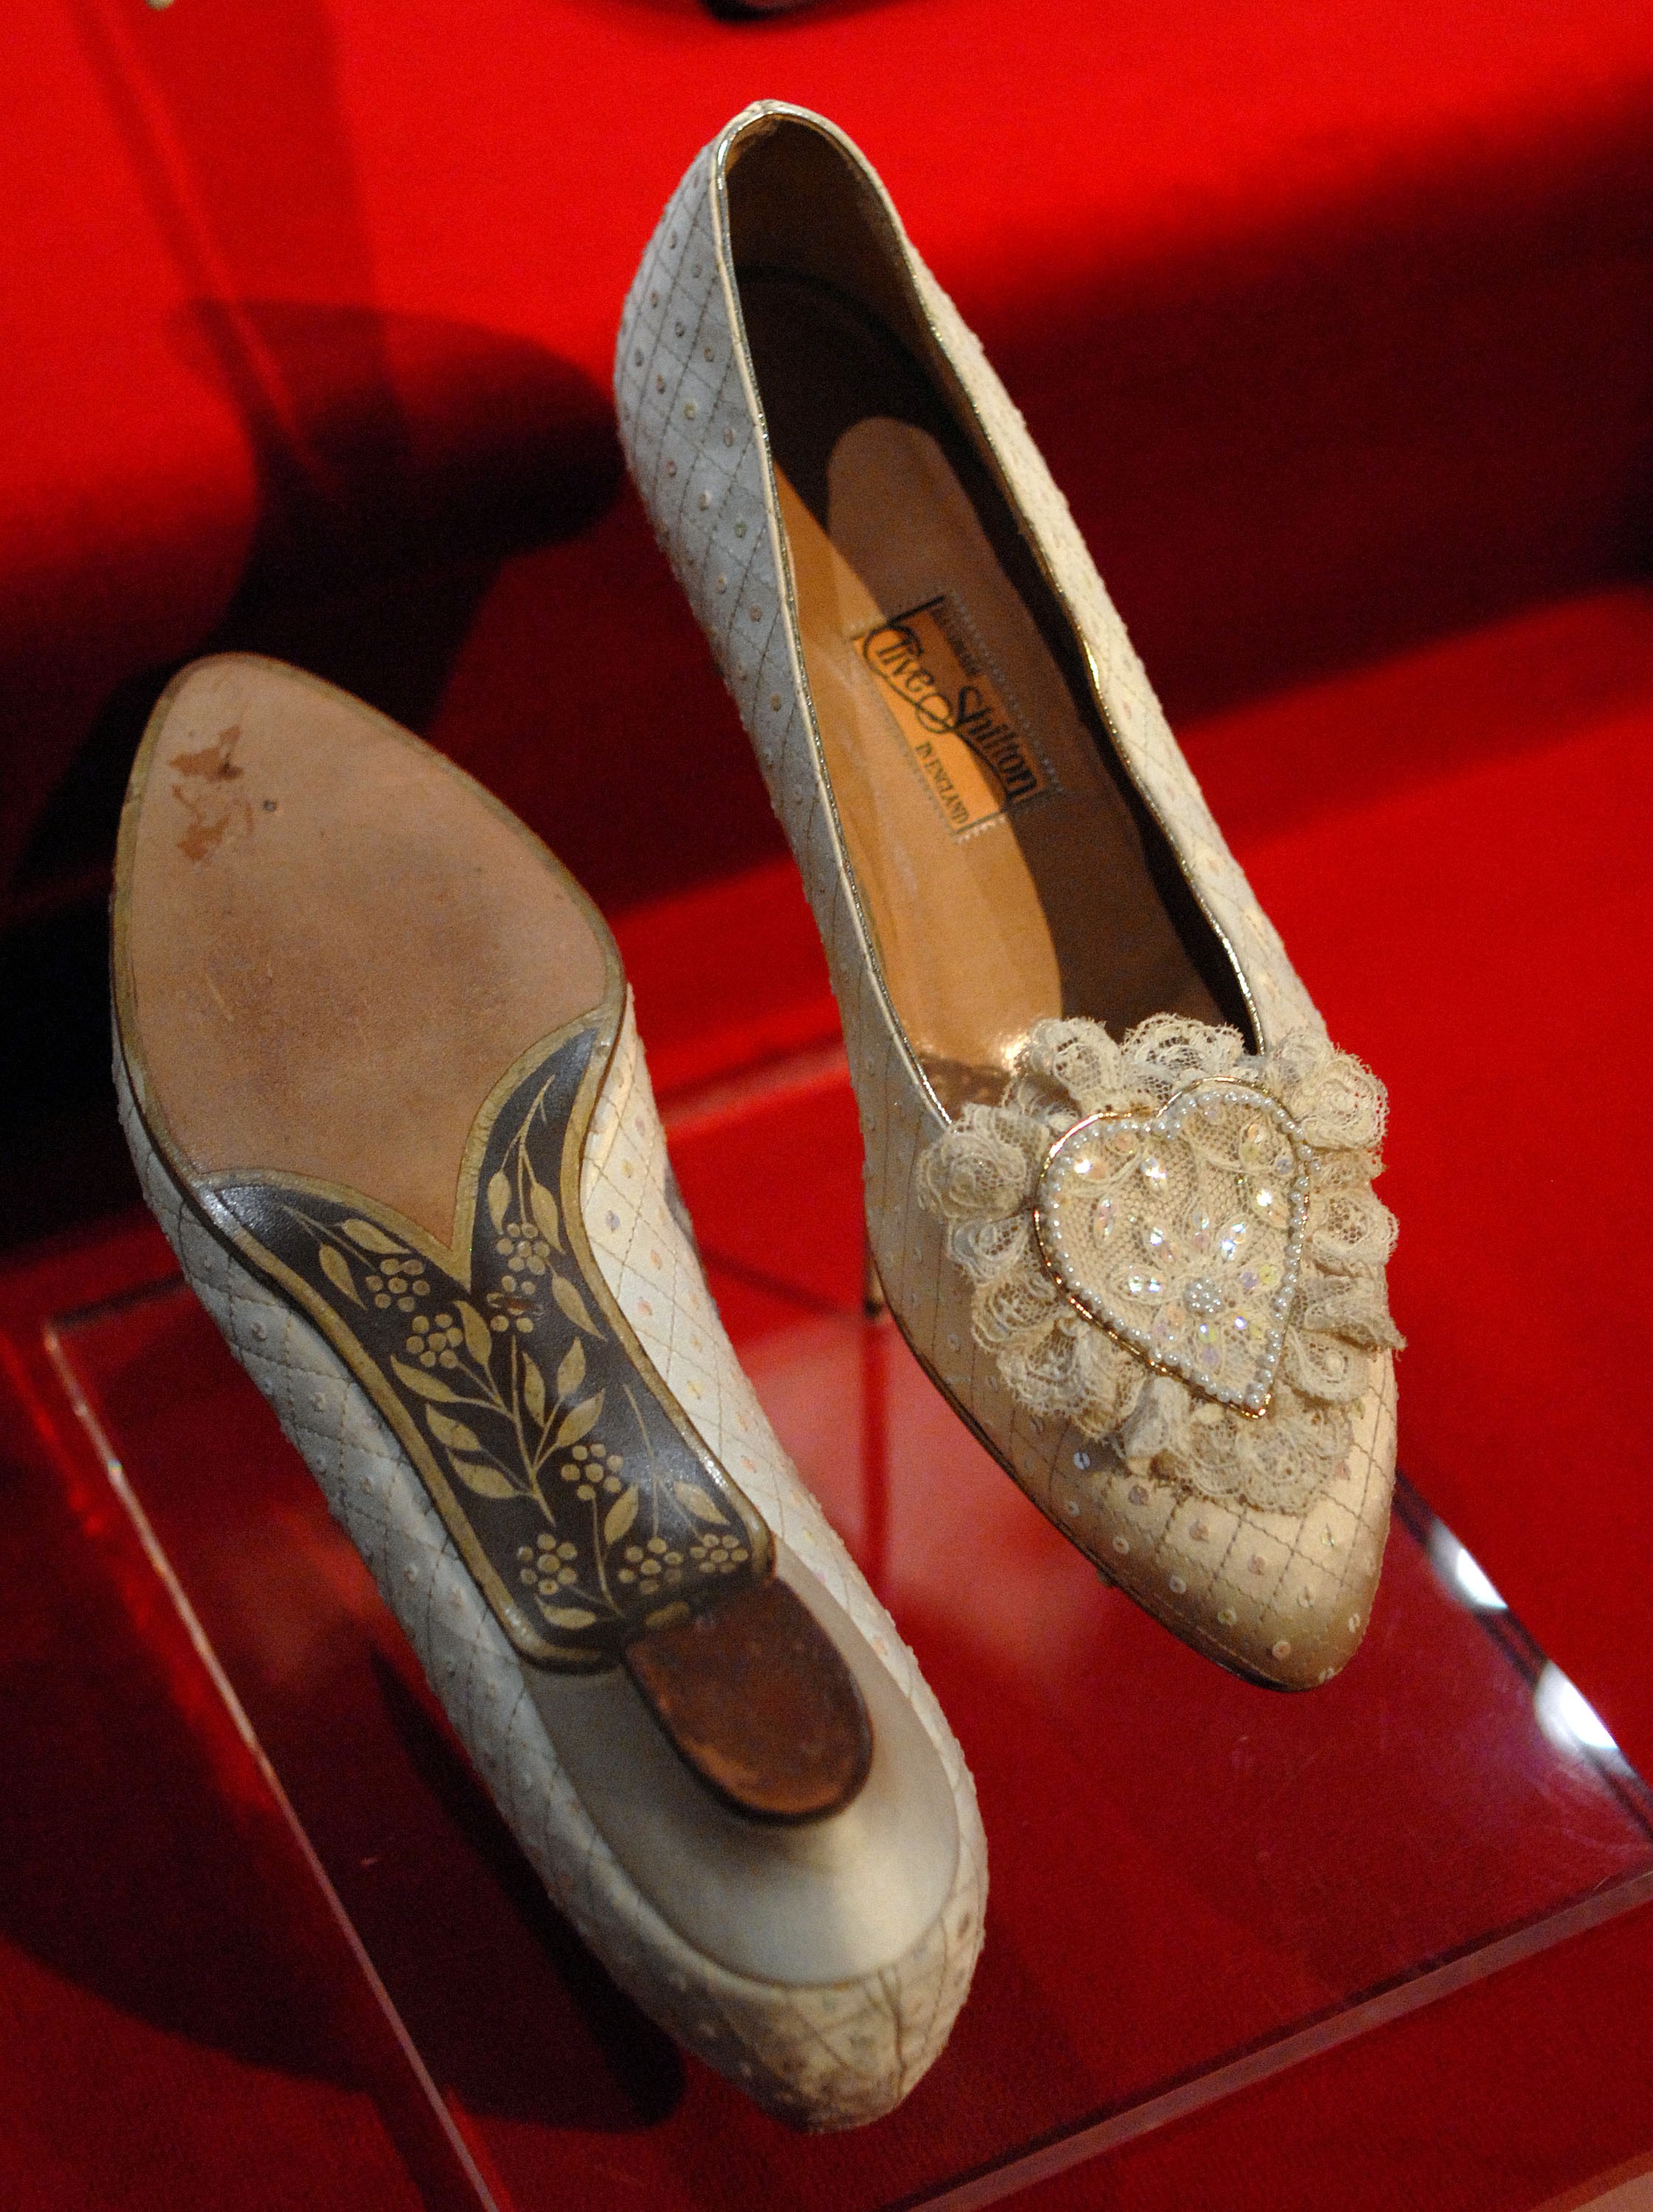 Sapatos usados por Diana no dia do seu casamento, exibidos em exposição  (Foto: Getty)